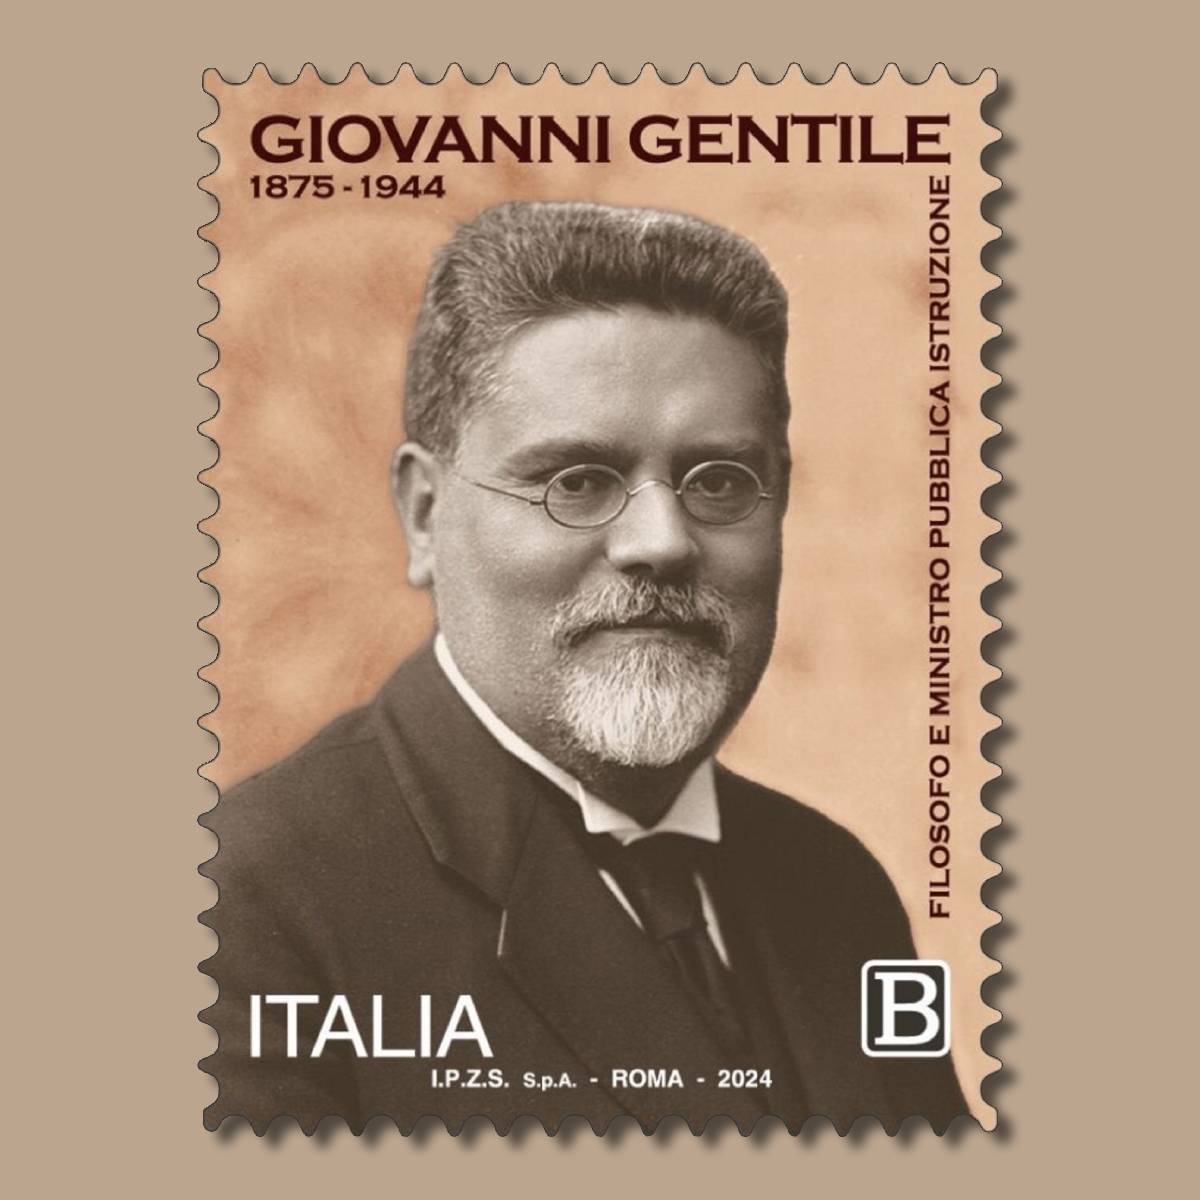 #Filatelia #francobollo commemorativo di Giovanni Gentile, nell’80°anniversario della scomparsa. Nell’immagine, un ritratto del filosofo, considerato tra i maggiori esponenti dell’idealismo italiano. @mimit_gov @IPZS